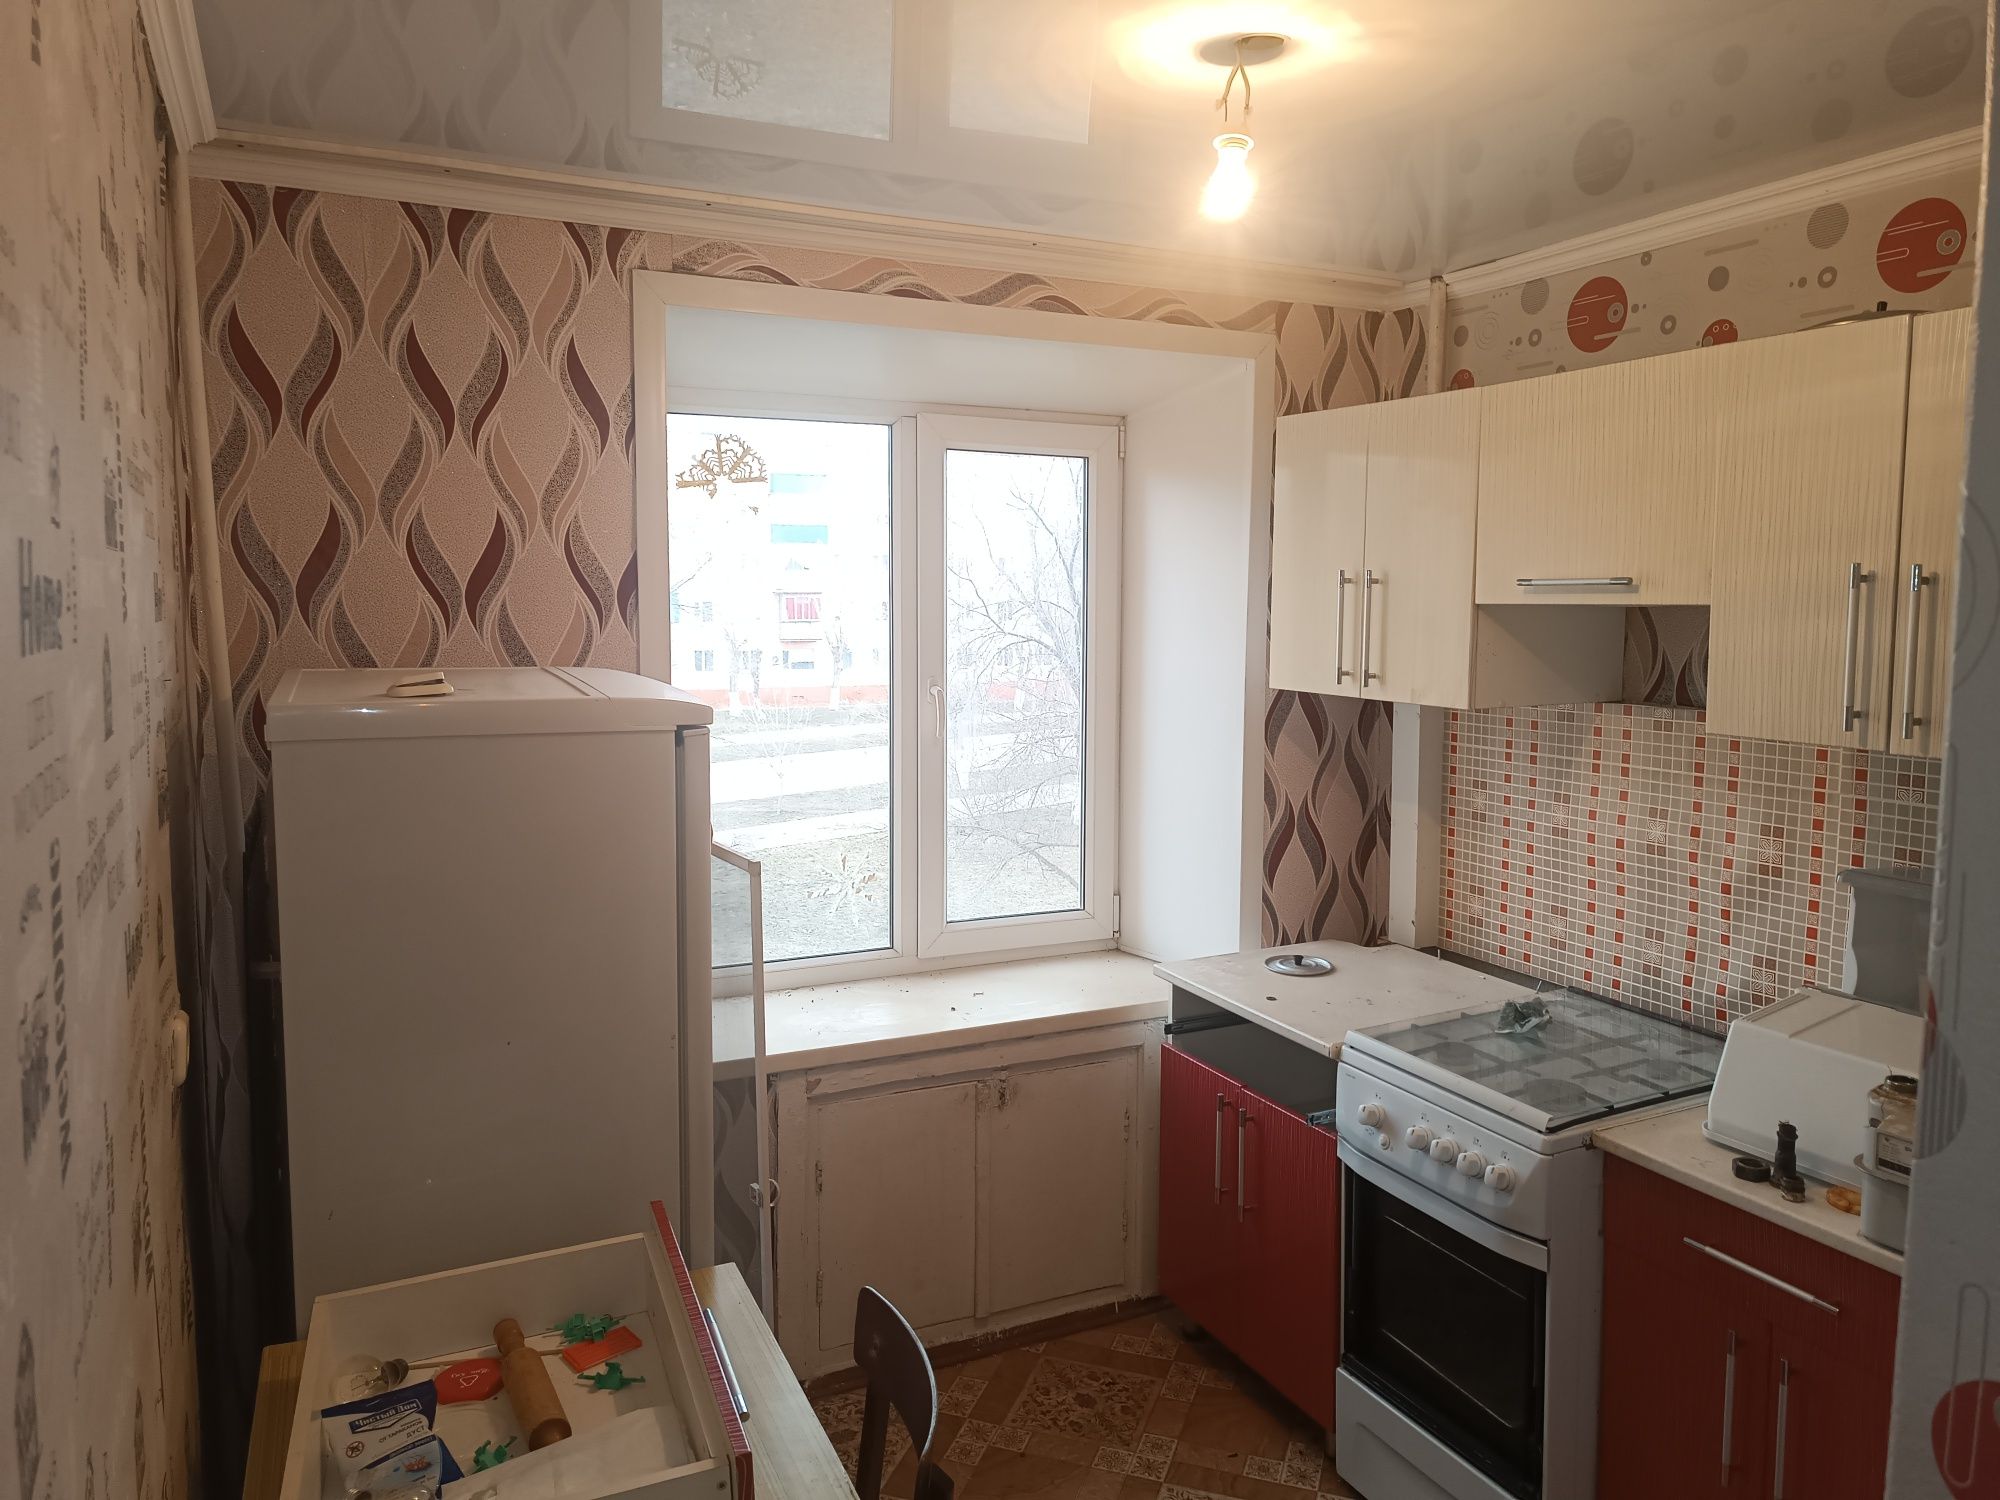 Продам однокомнатную квартиру г.Лисаковск 2-6, балкон застеклен.